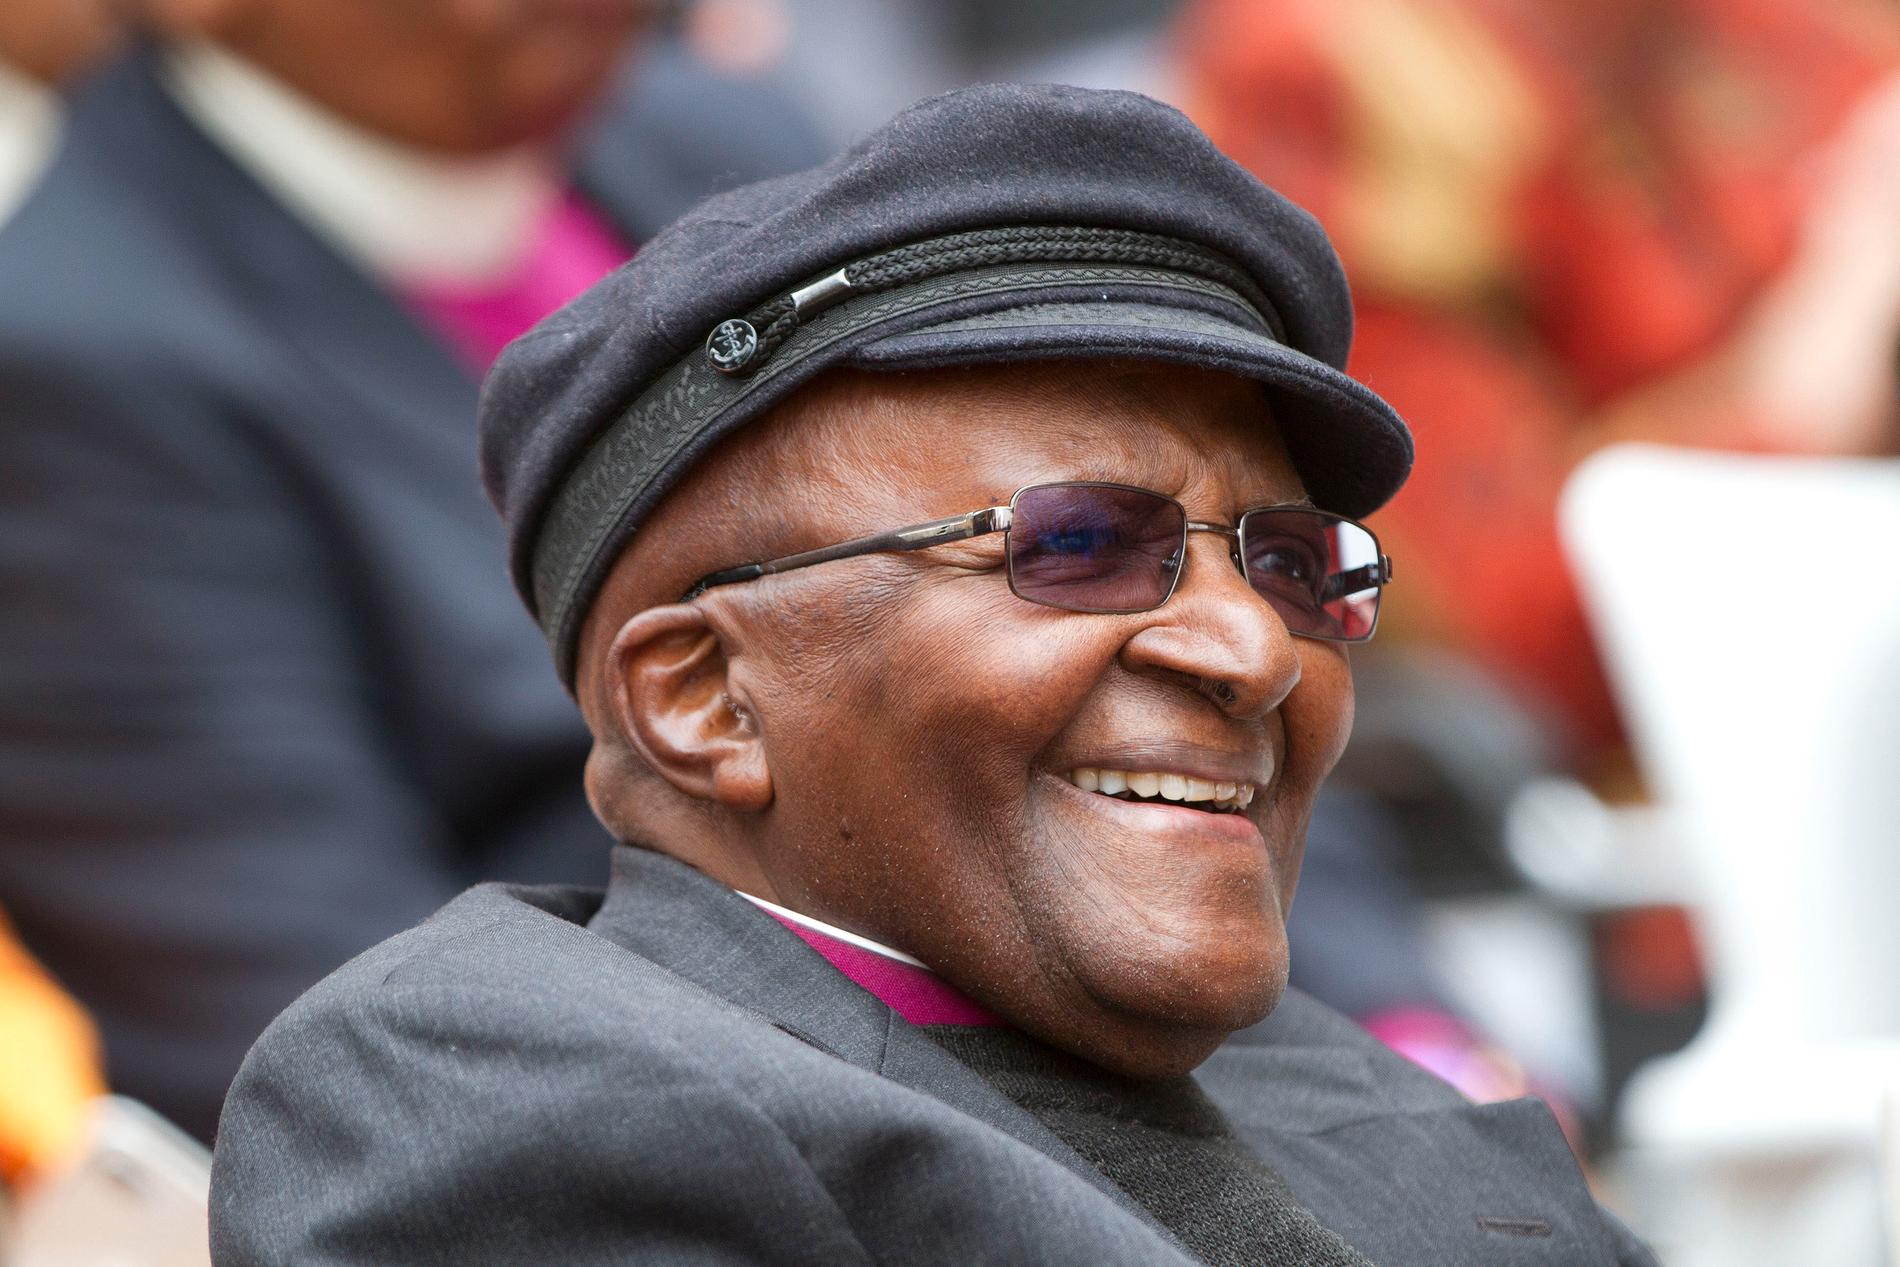 ”Desmond Tutu har med stor konsekvens bekämpat kolonialismen.”